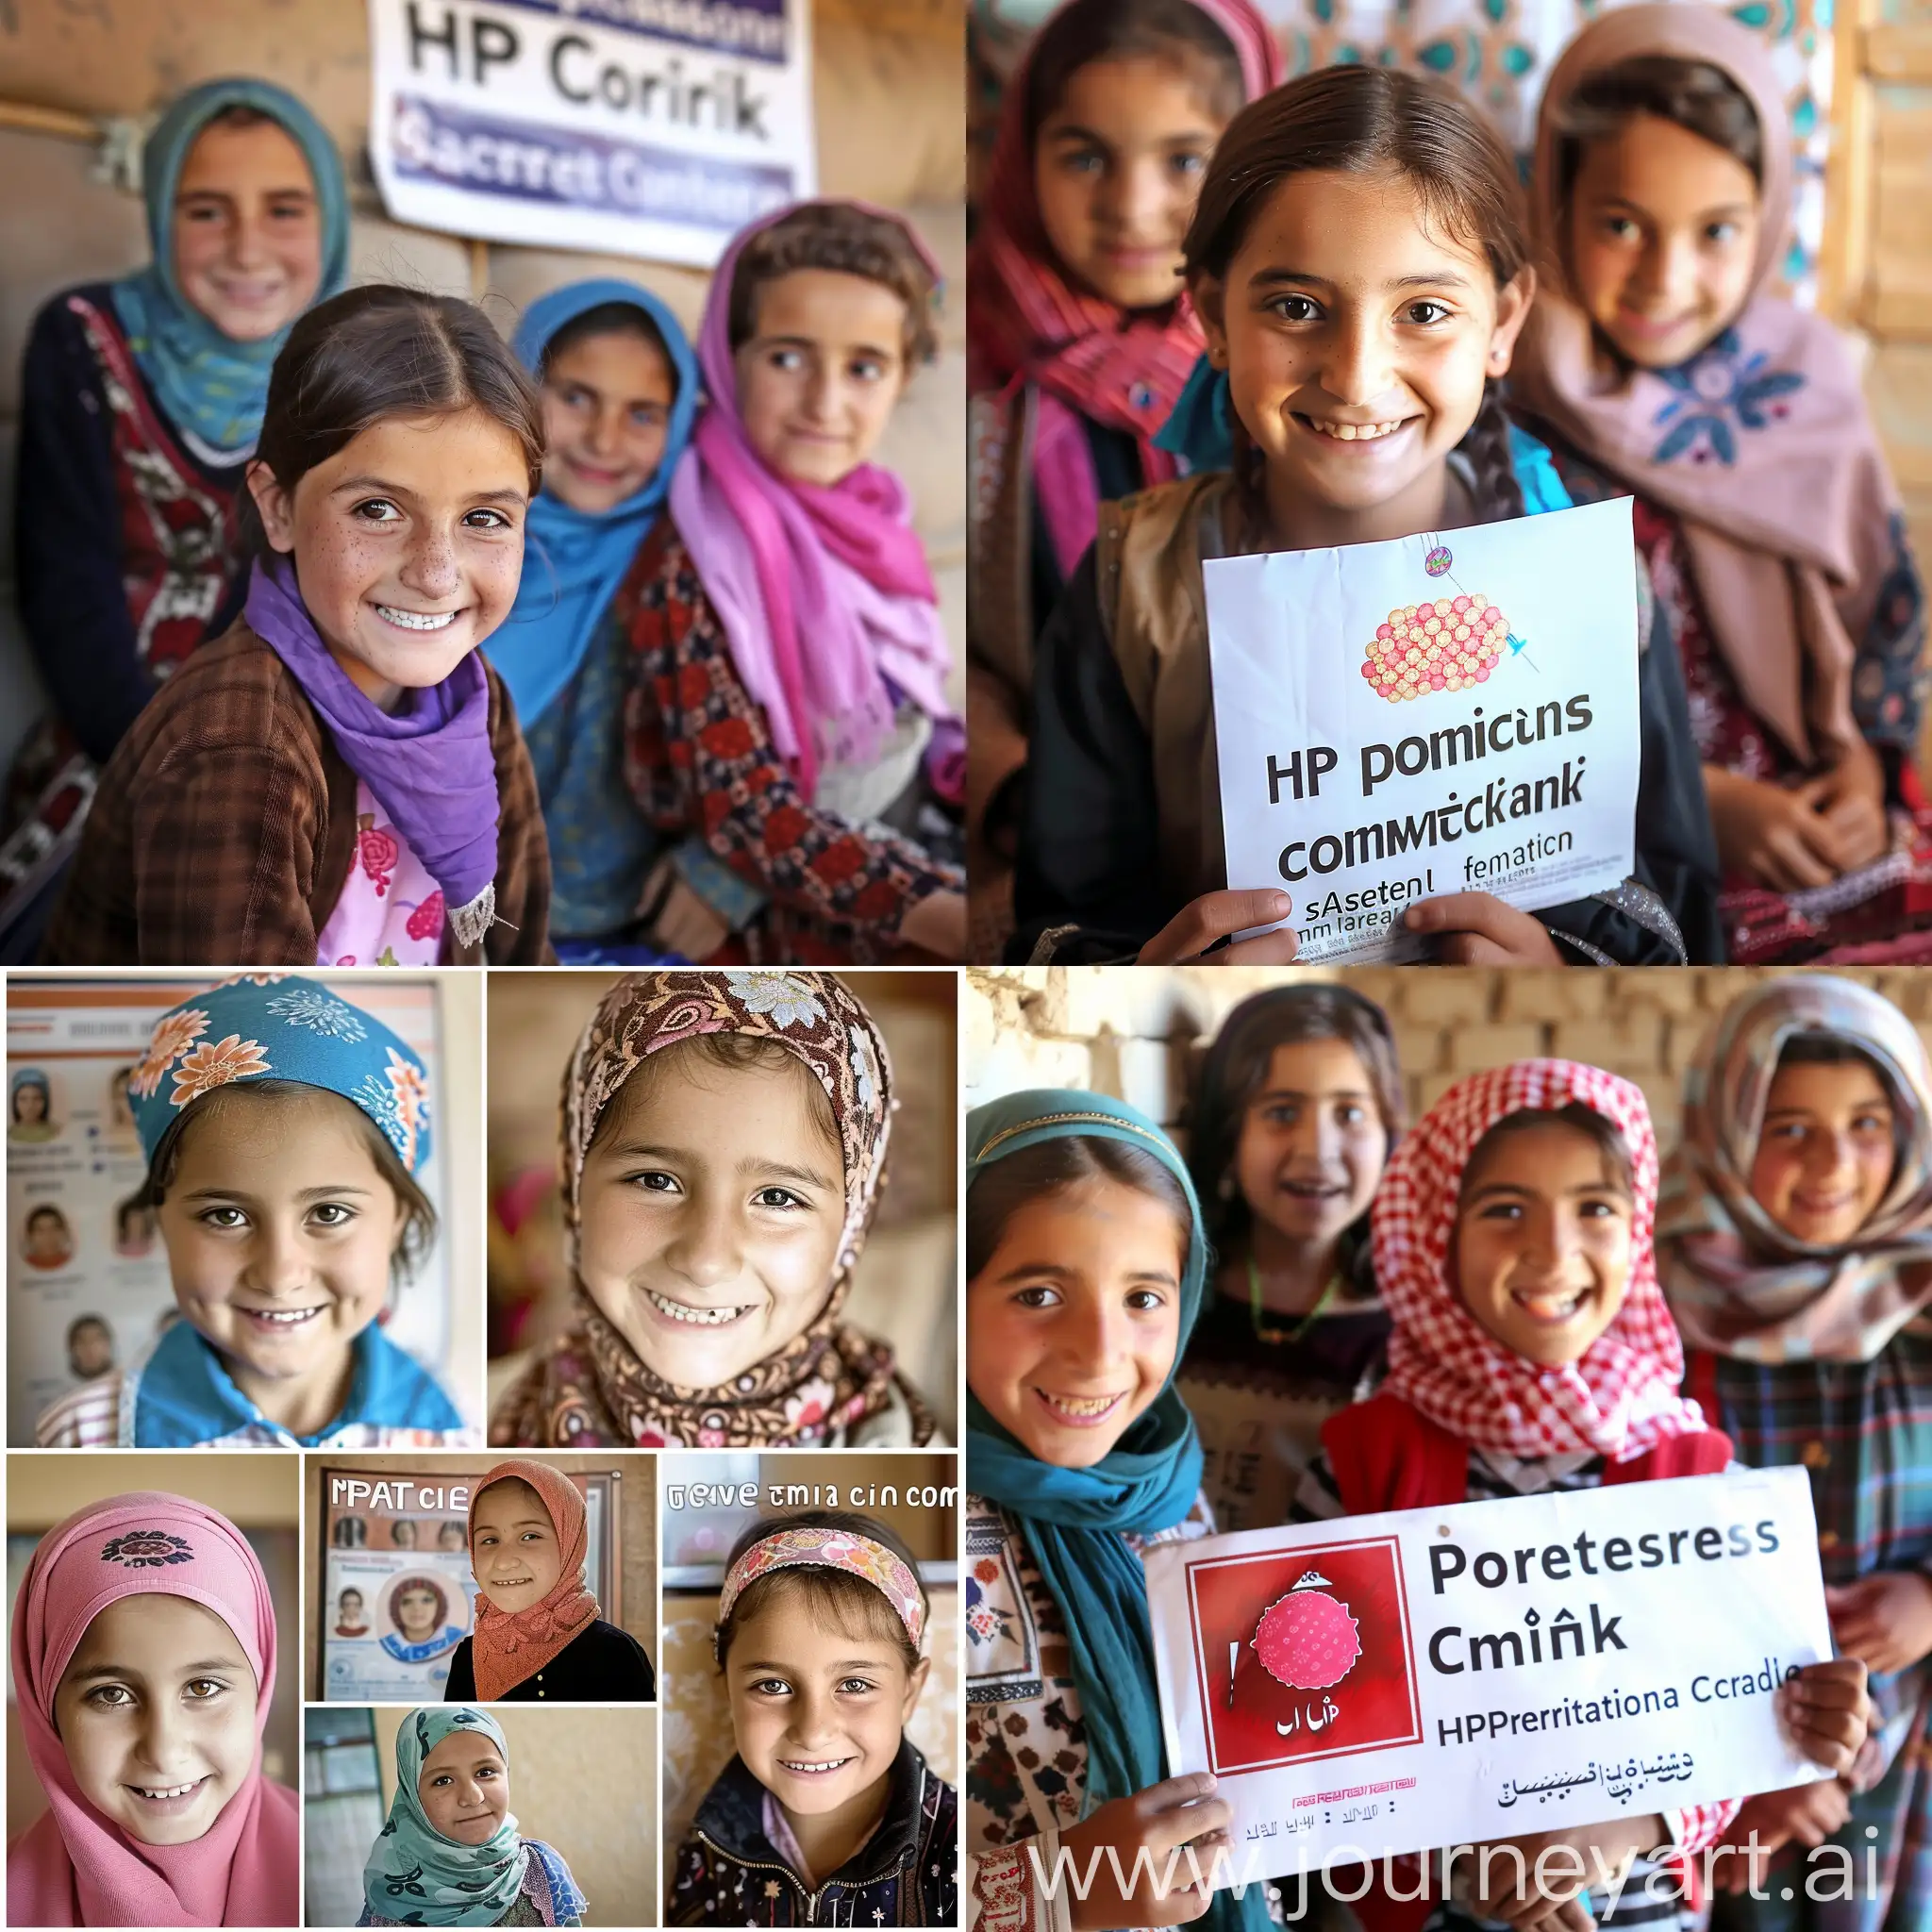 Мне нужен информативный постер с фотографиями таджикских десятилетних девочек и со следующим текстом на постере: Прививка против ВПЧ : защищает от рака шейки матки и является безопасной и эффективной.